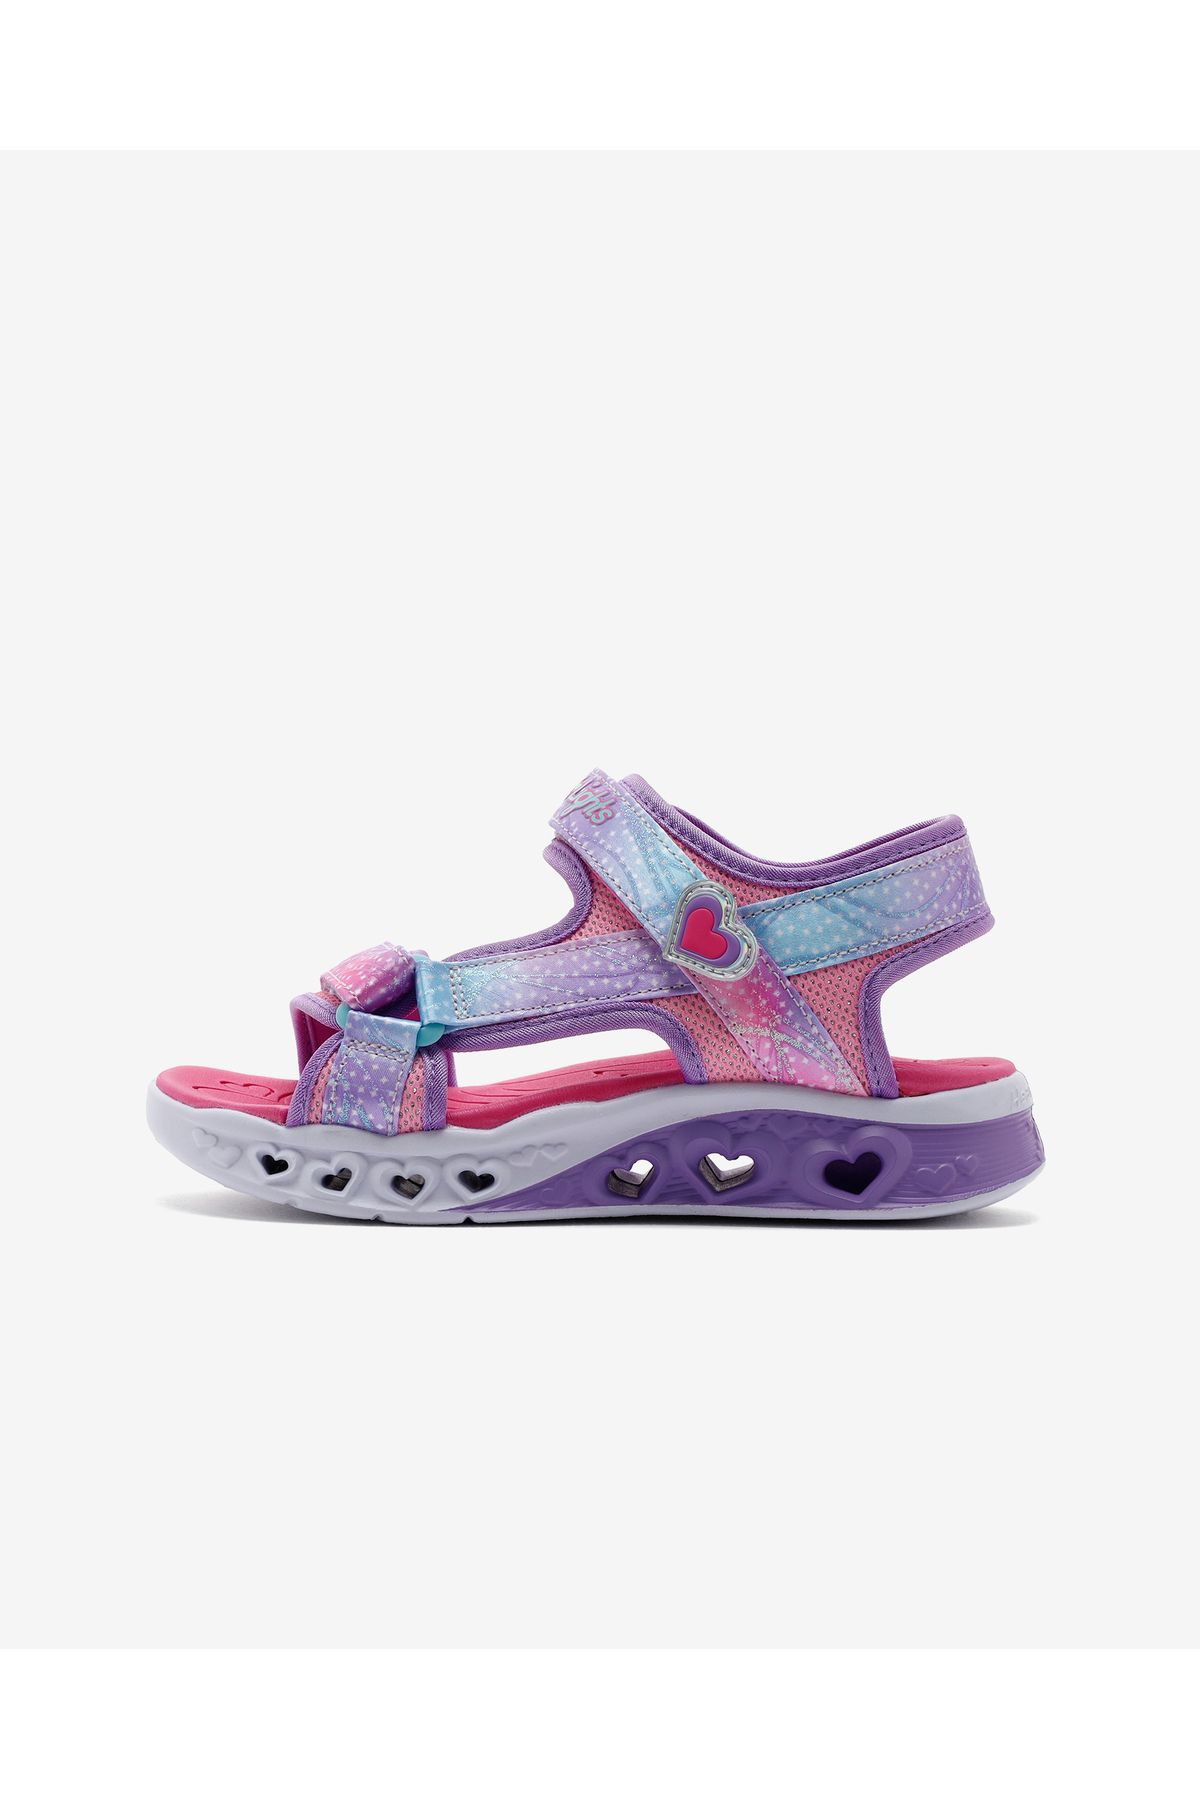 Skechers Flutter Hearts Sandal - Twili Büyük Kız Çocuk Pembe Sandalet 303105l Pkmt